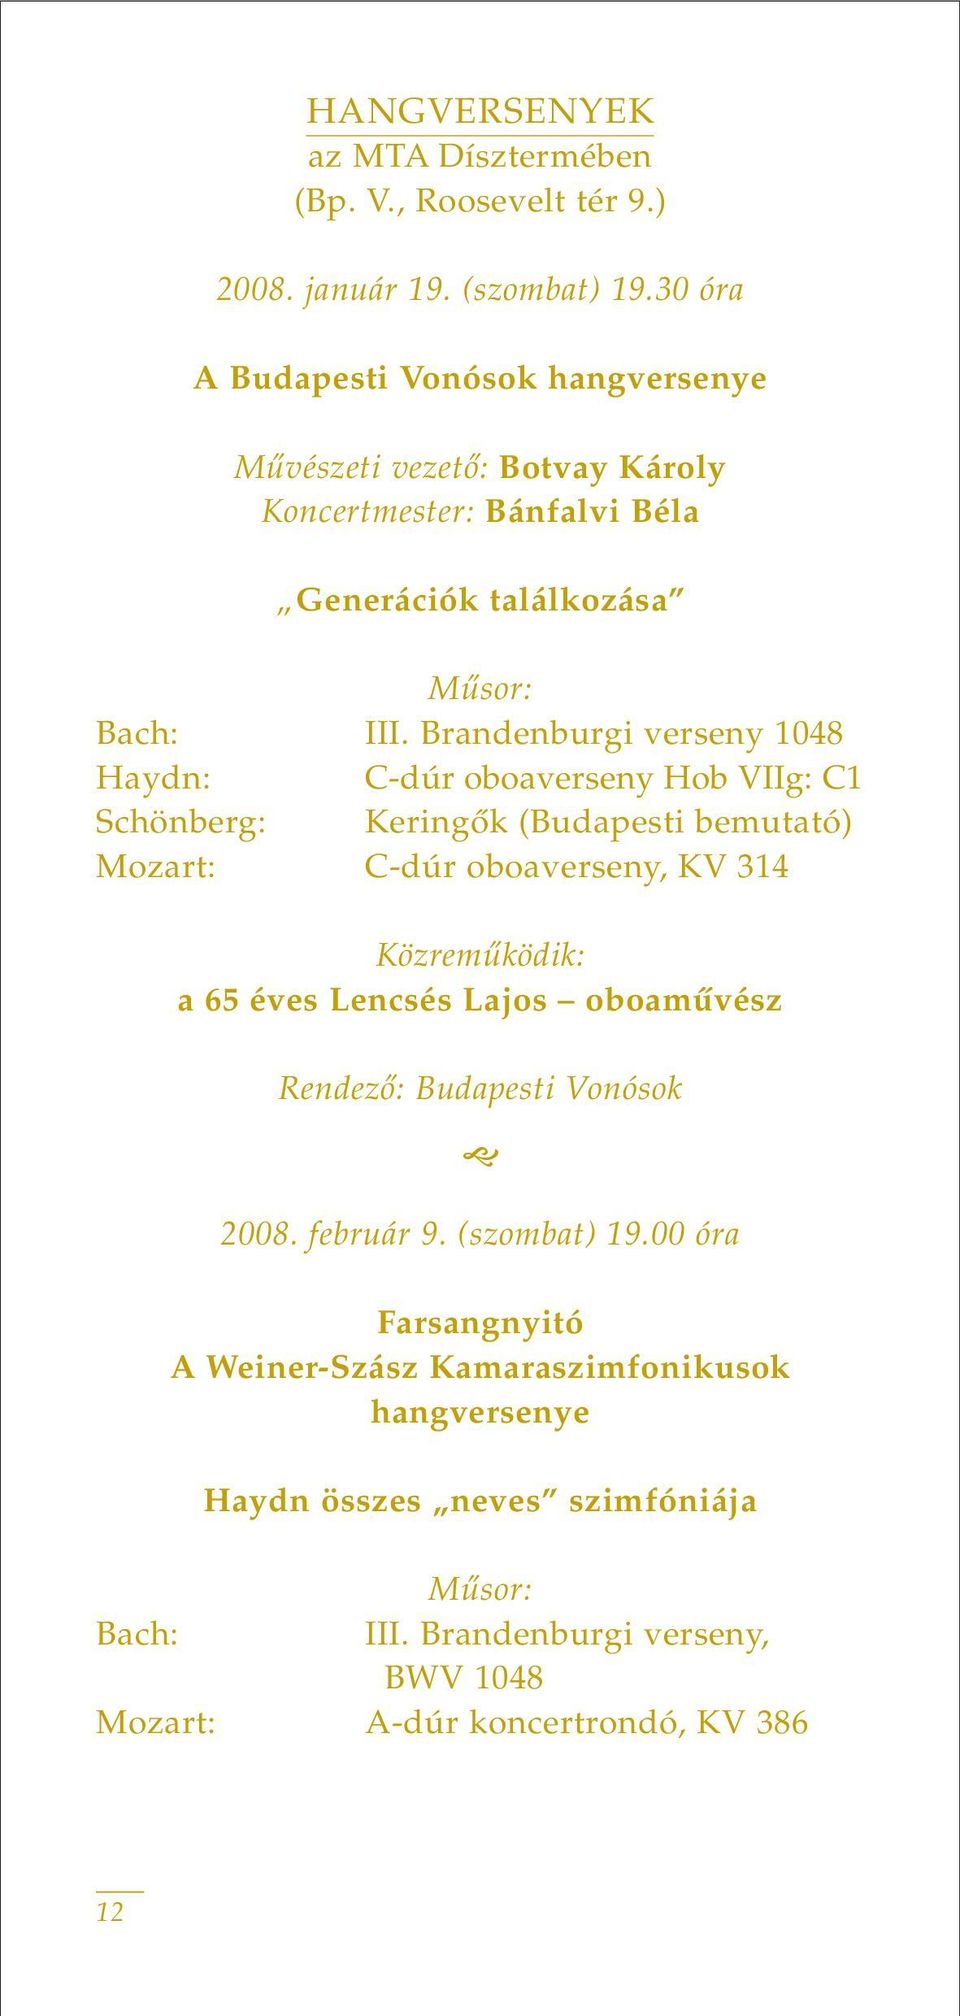 Brandenburgi verseny 1048 Haydn: C-dúr oboaverseny Hob VIIg: C1 Schönberg: Keringôk (Budapesti bemutató) Mozart: C-dúr oboaverseny, KV 314 Közremûködik: a 65 éves